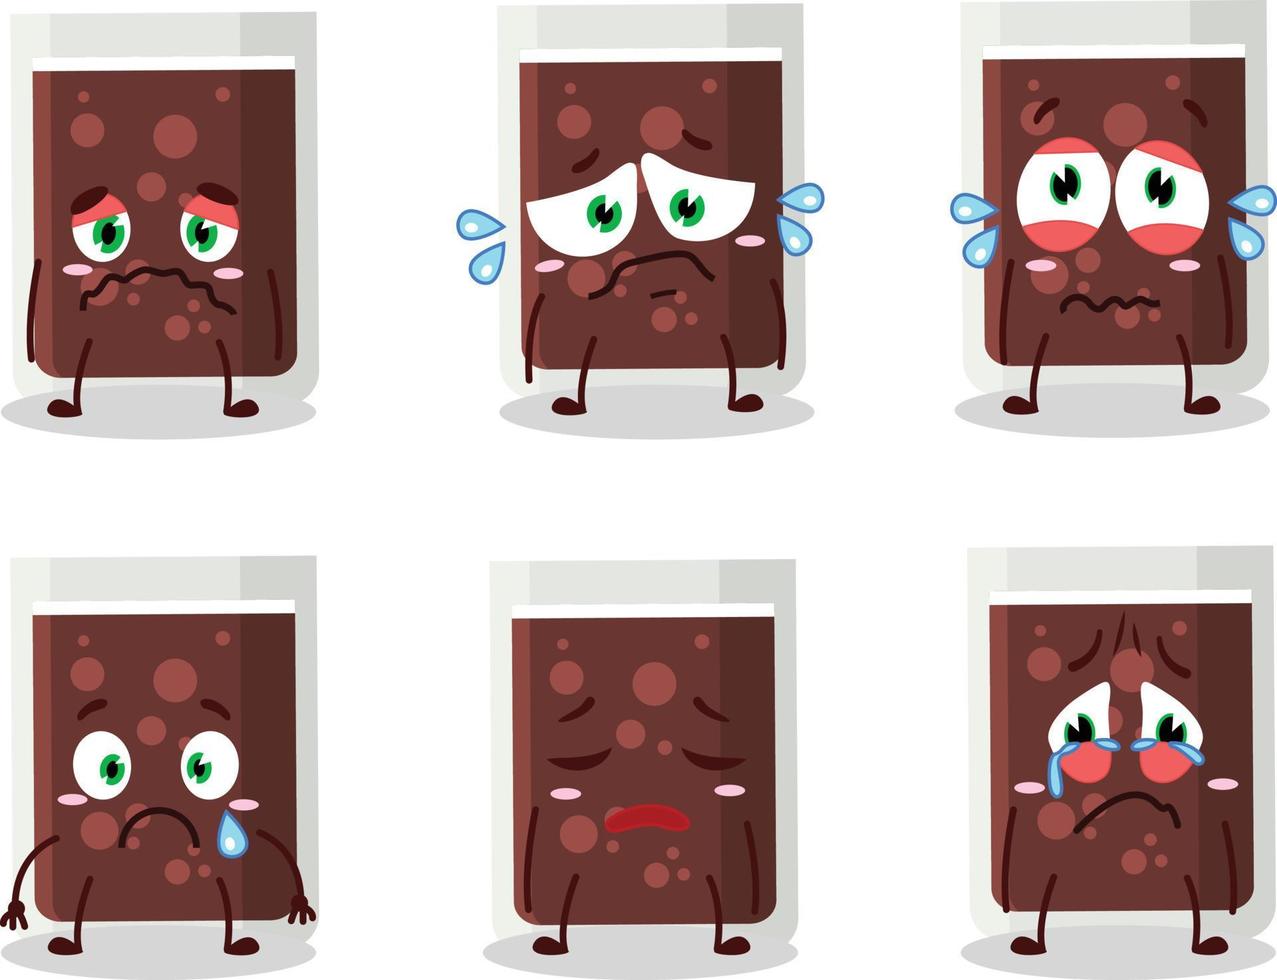 vidro do Cola desenho animado personagem com triste expressão vetor